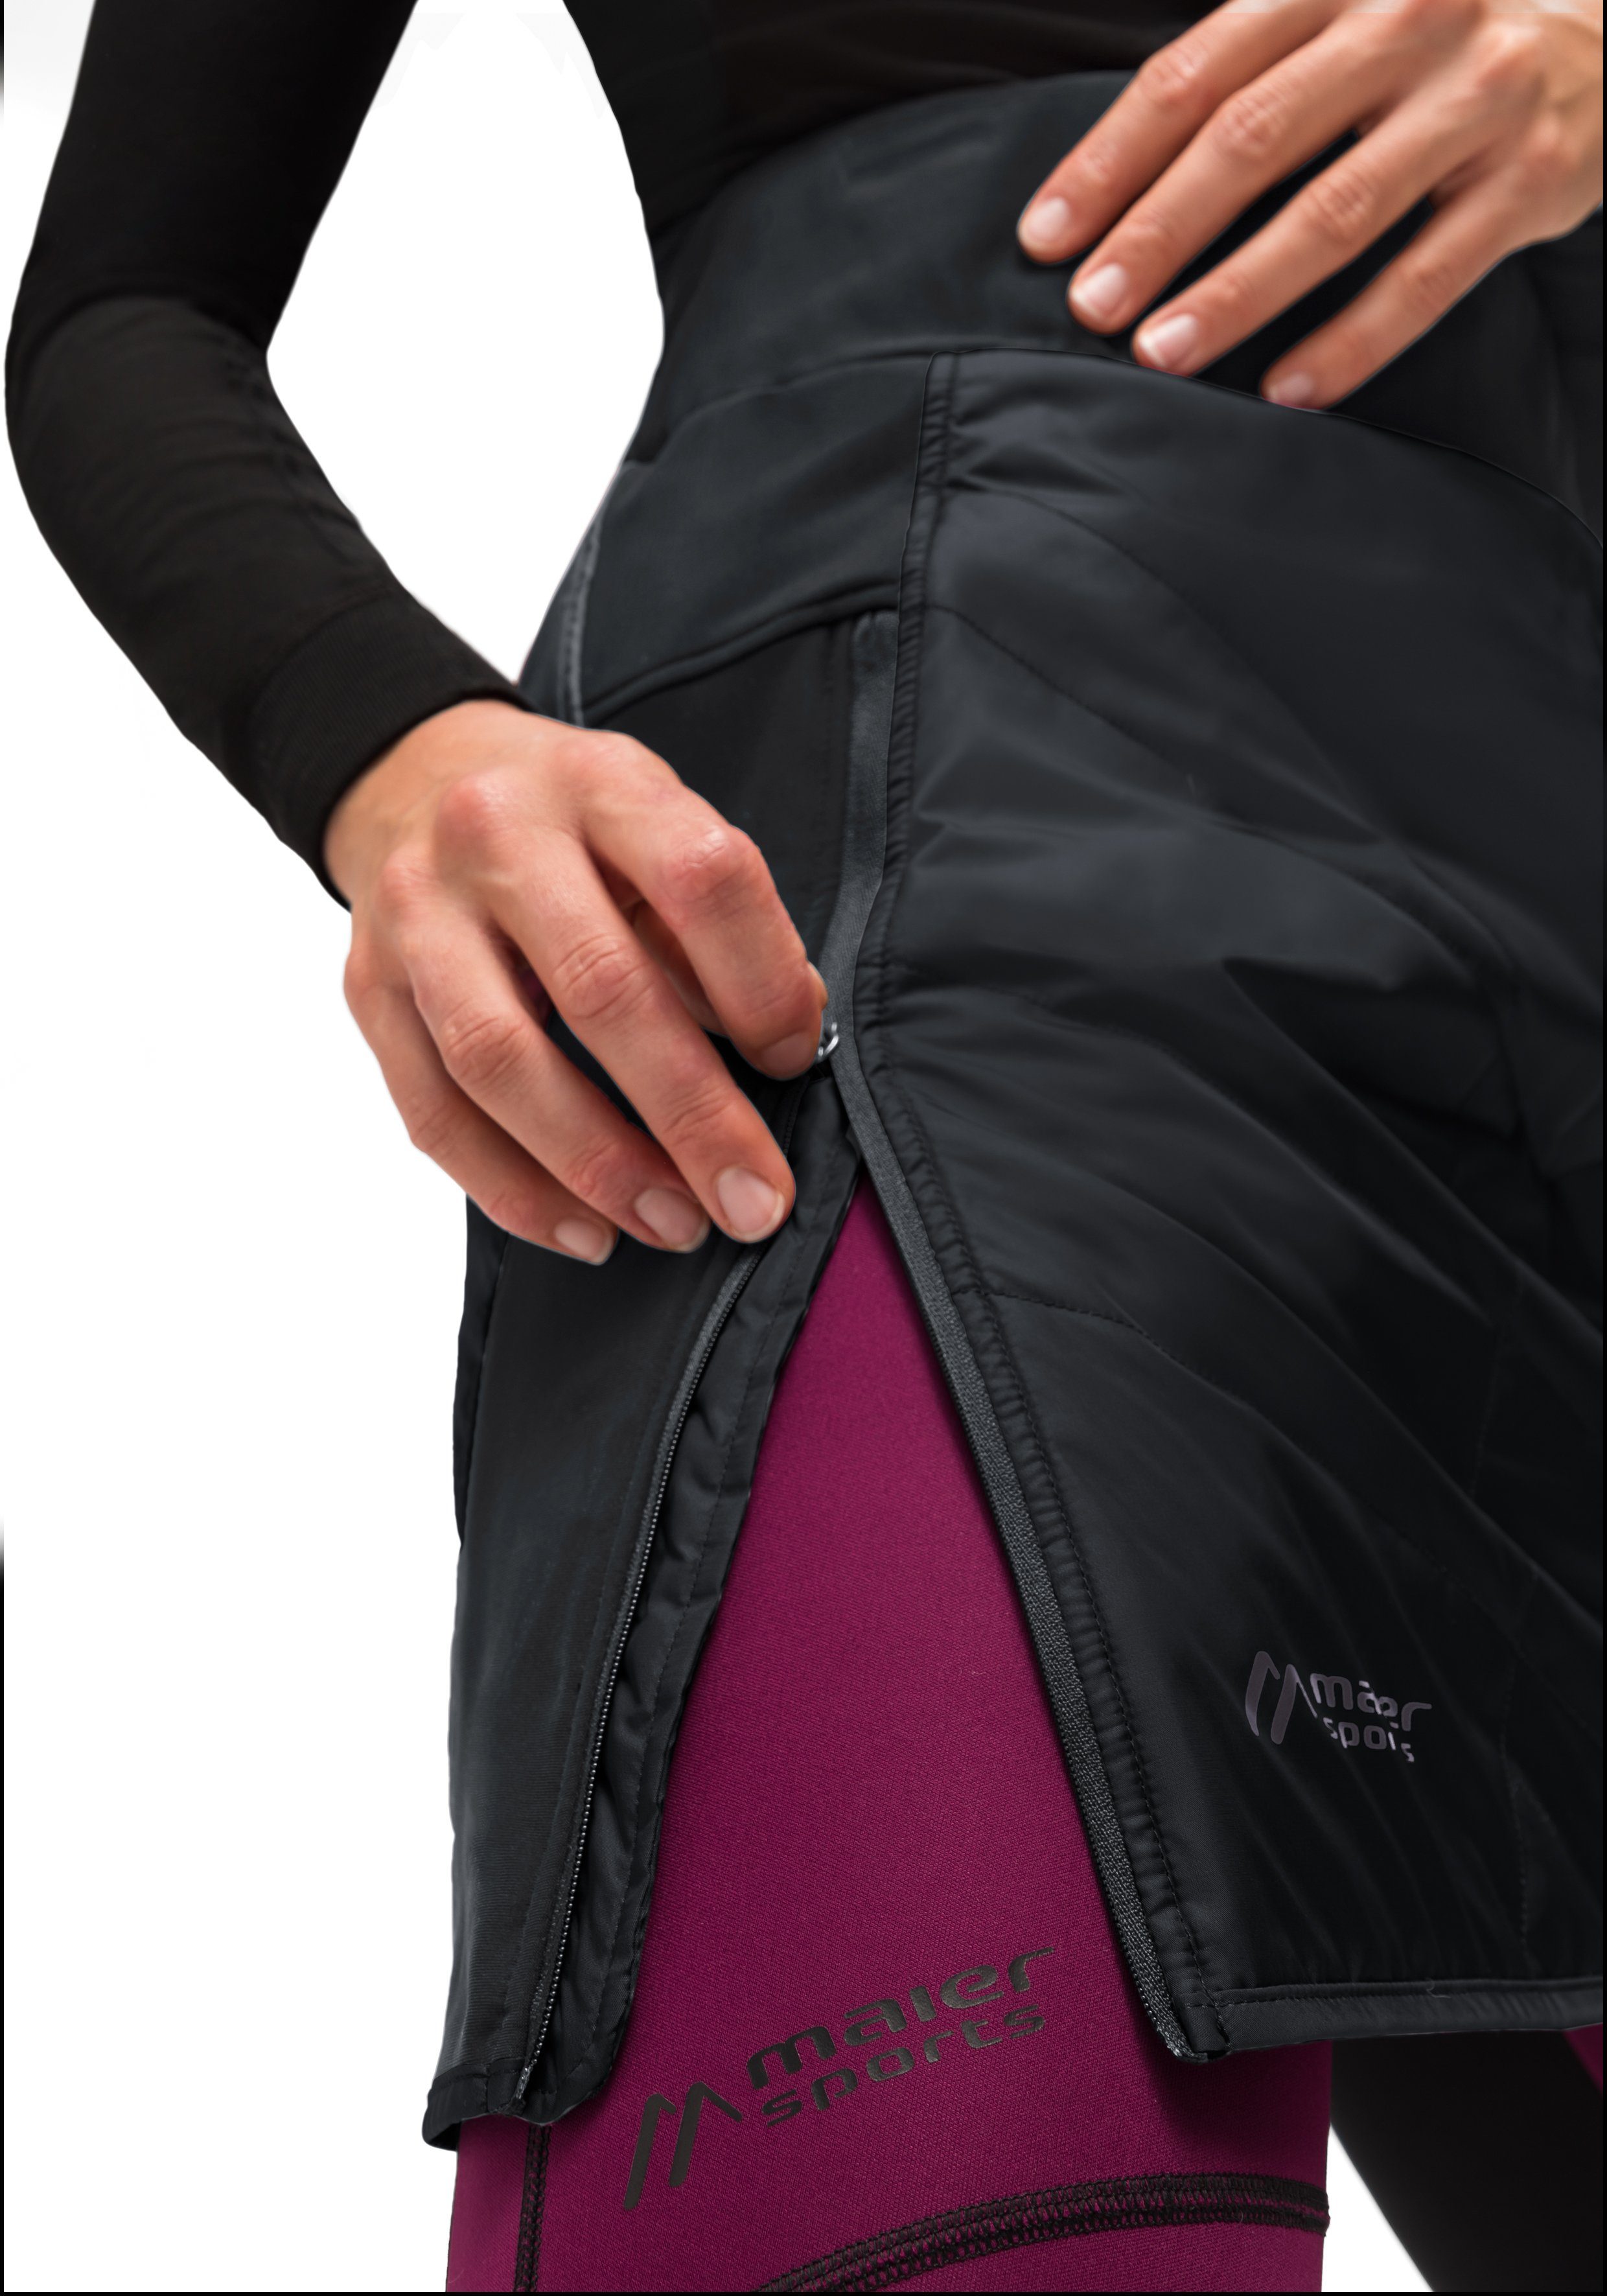 Sports Skirt W elastischer windabweisend, Sweatrock Bund atmungsaktiv Maier Überrock, schwarz und Skjoma Damen